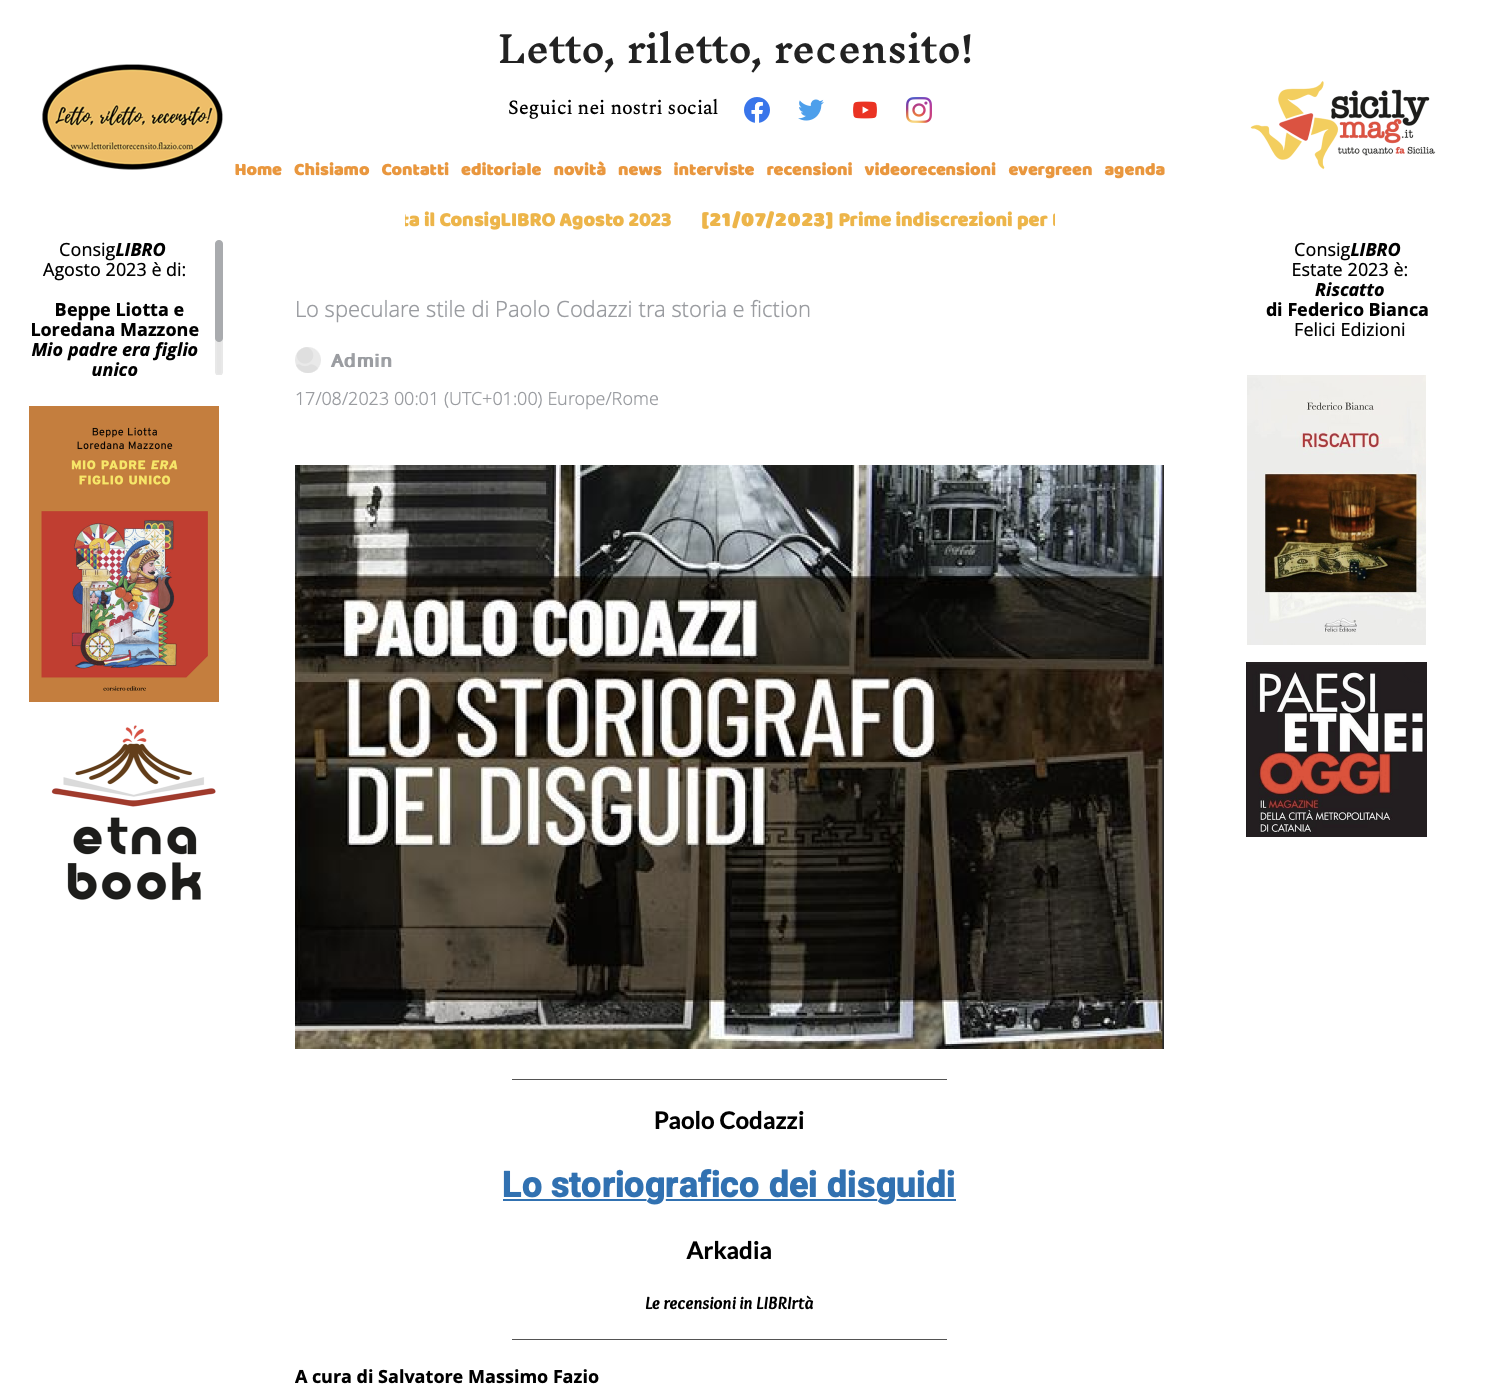 SMF per LRR – Lo speculare stile di Paolo Codazzi tra storia e fiction – Recensione a “Lo storiografico dei disguidi” di Paolo Codazzi” (Arkadia)-